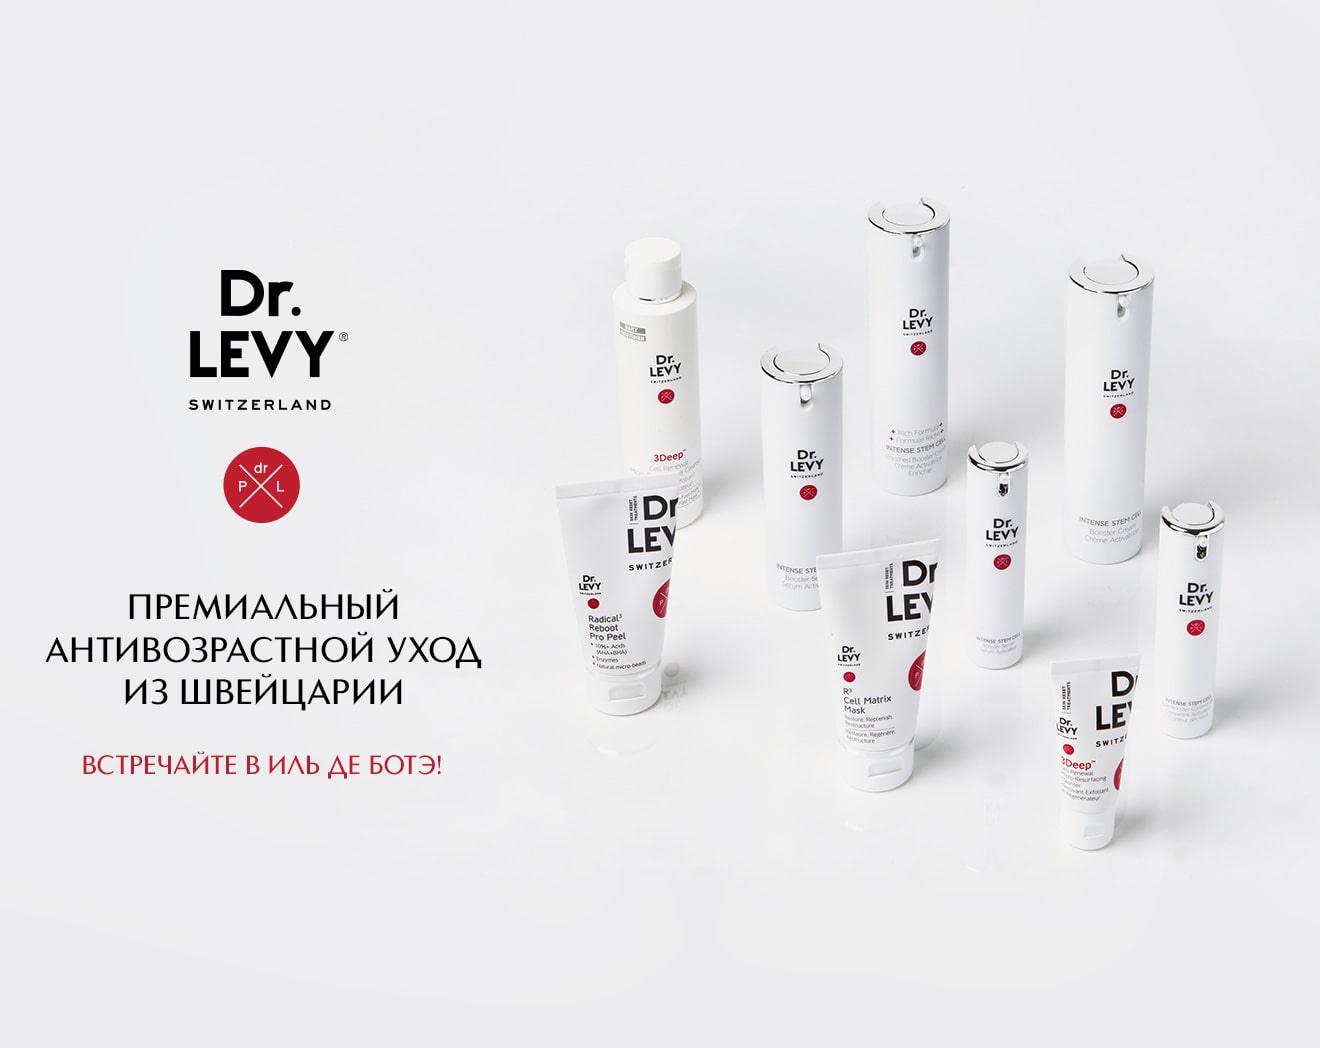 Встречайте новый бренд DR.LEVY в ИЛЬ ДЕ БОТЭ!